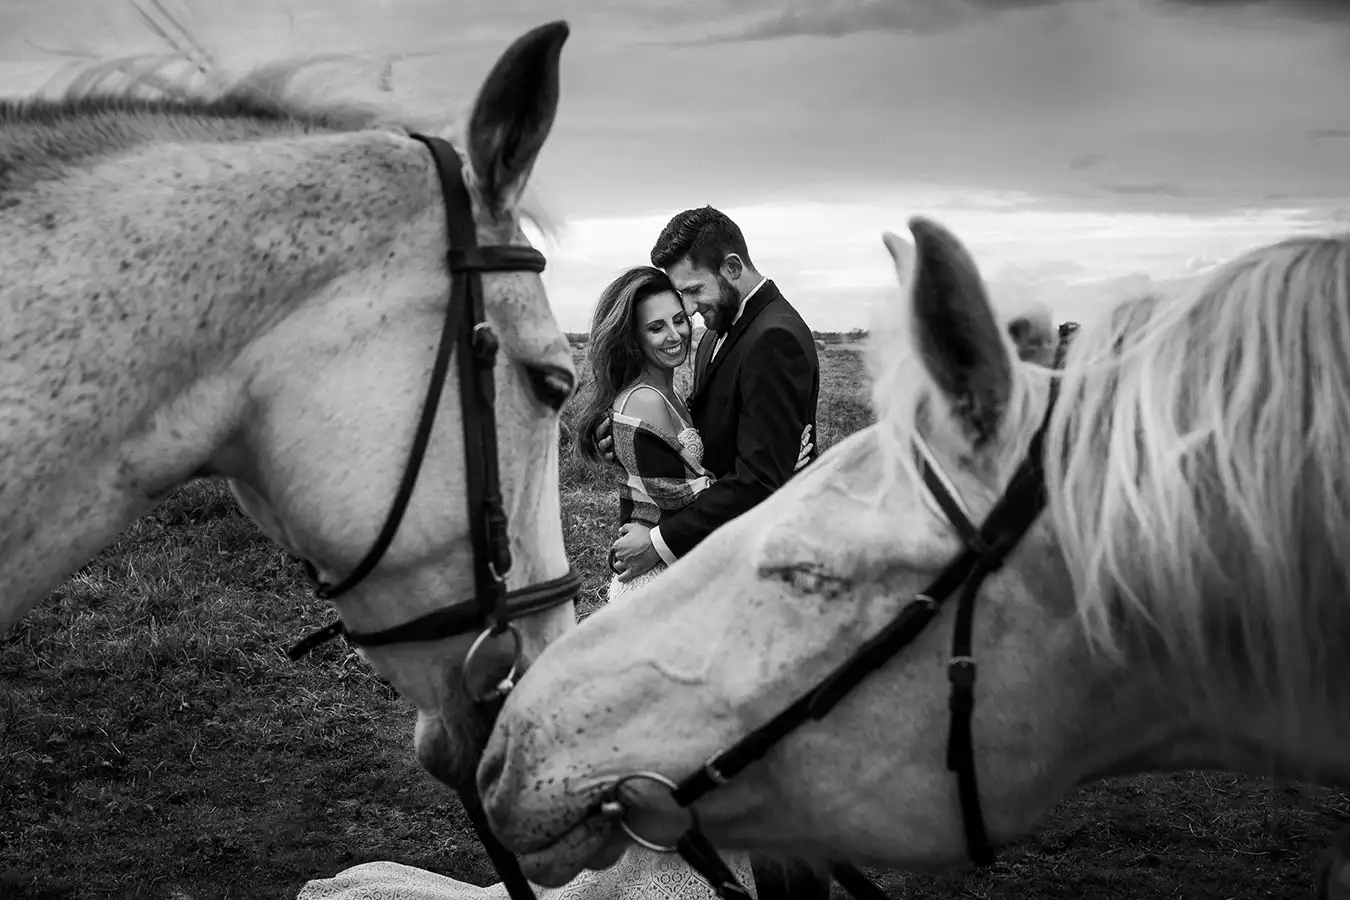 sesja ślubna z końmi